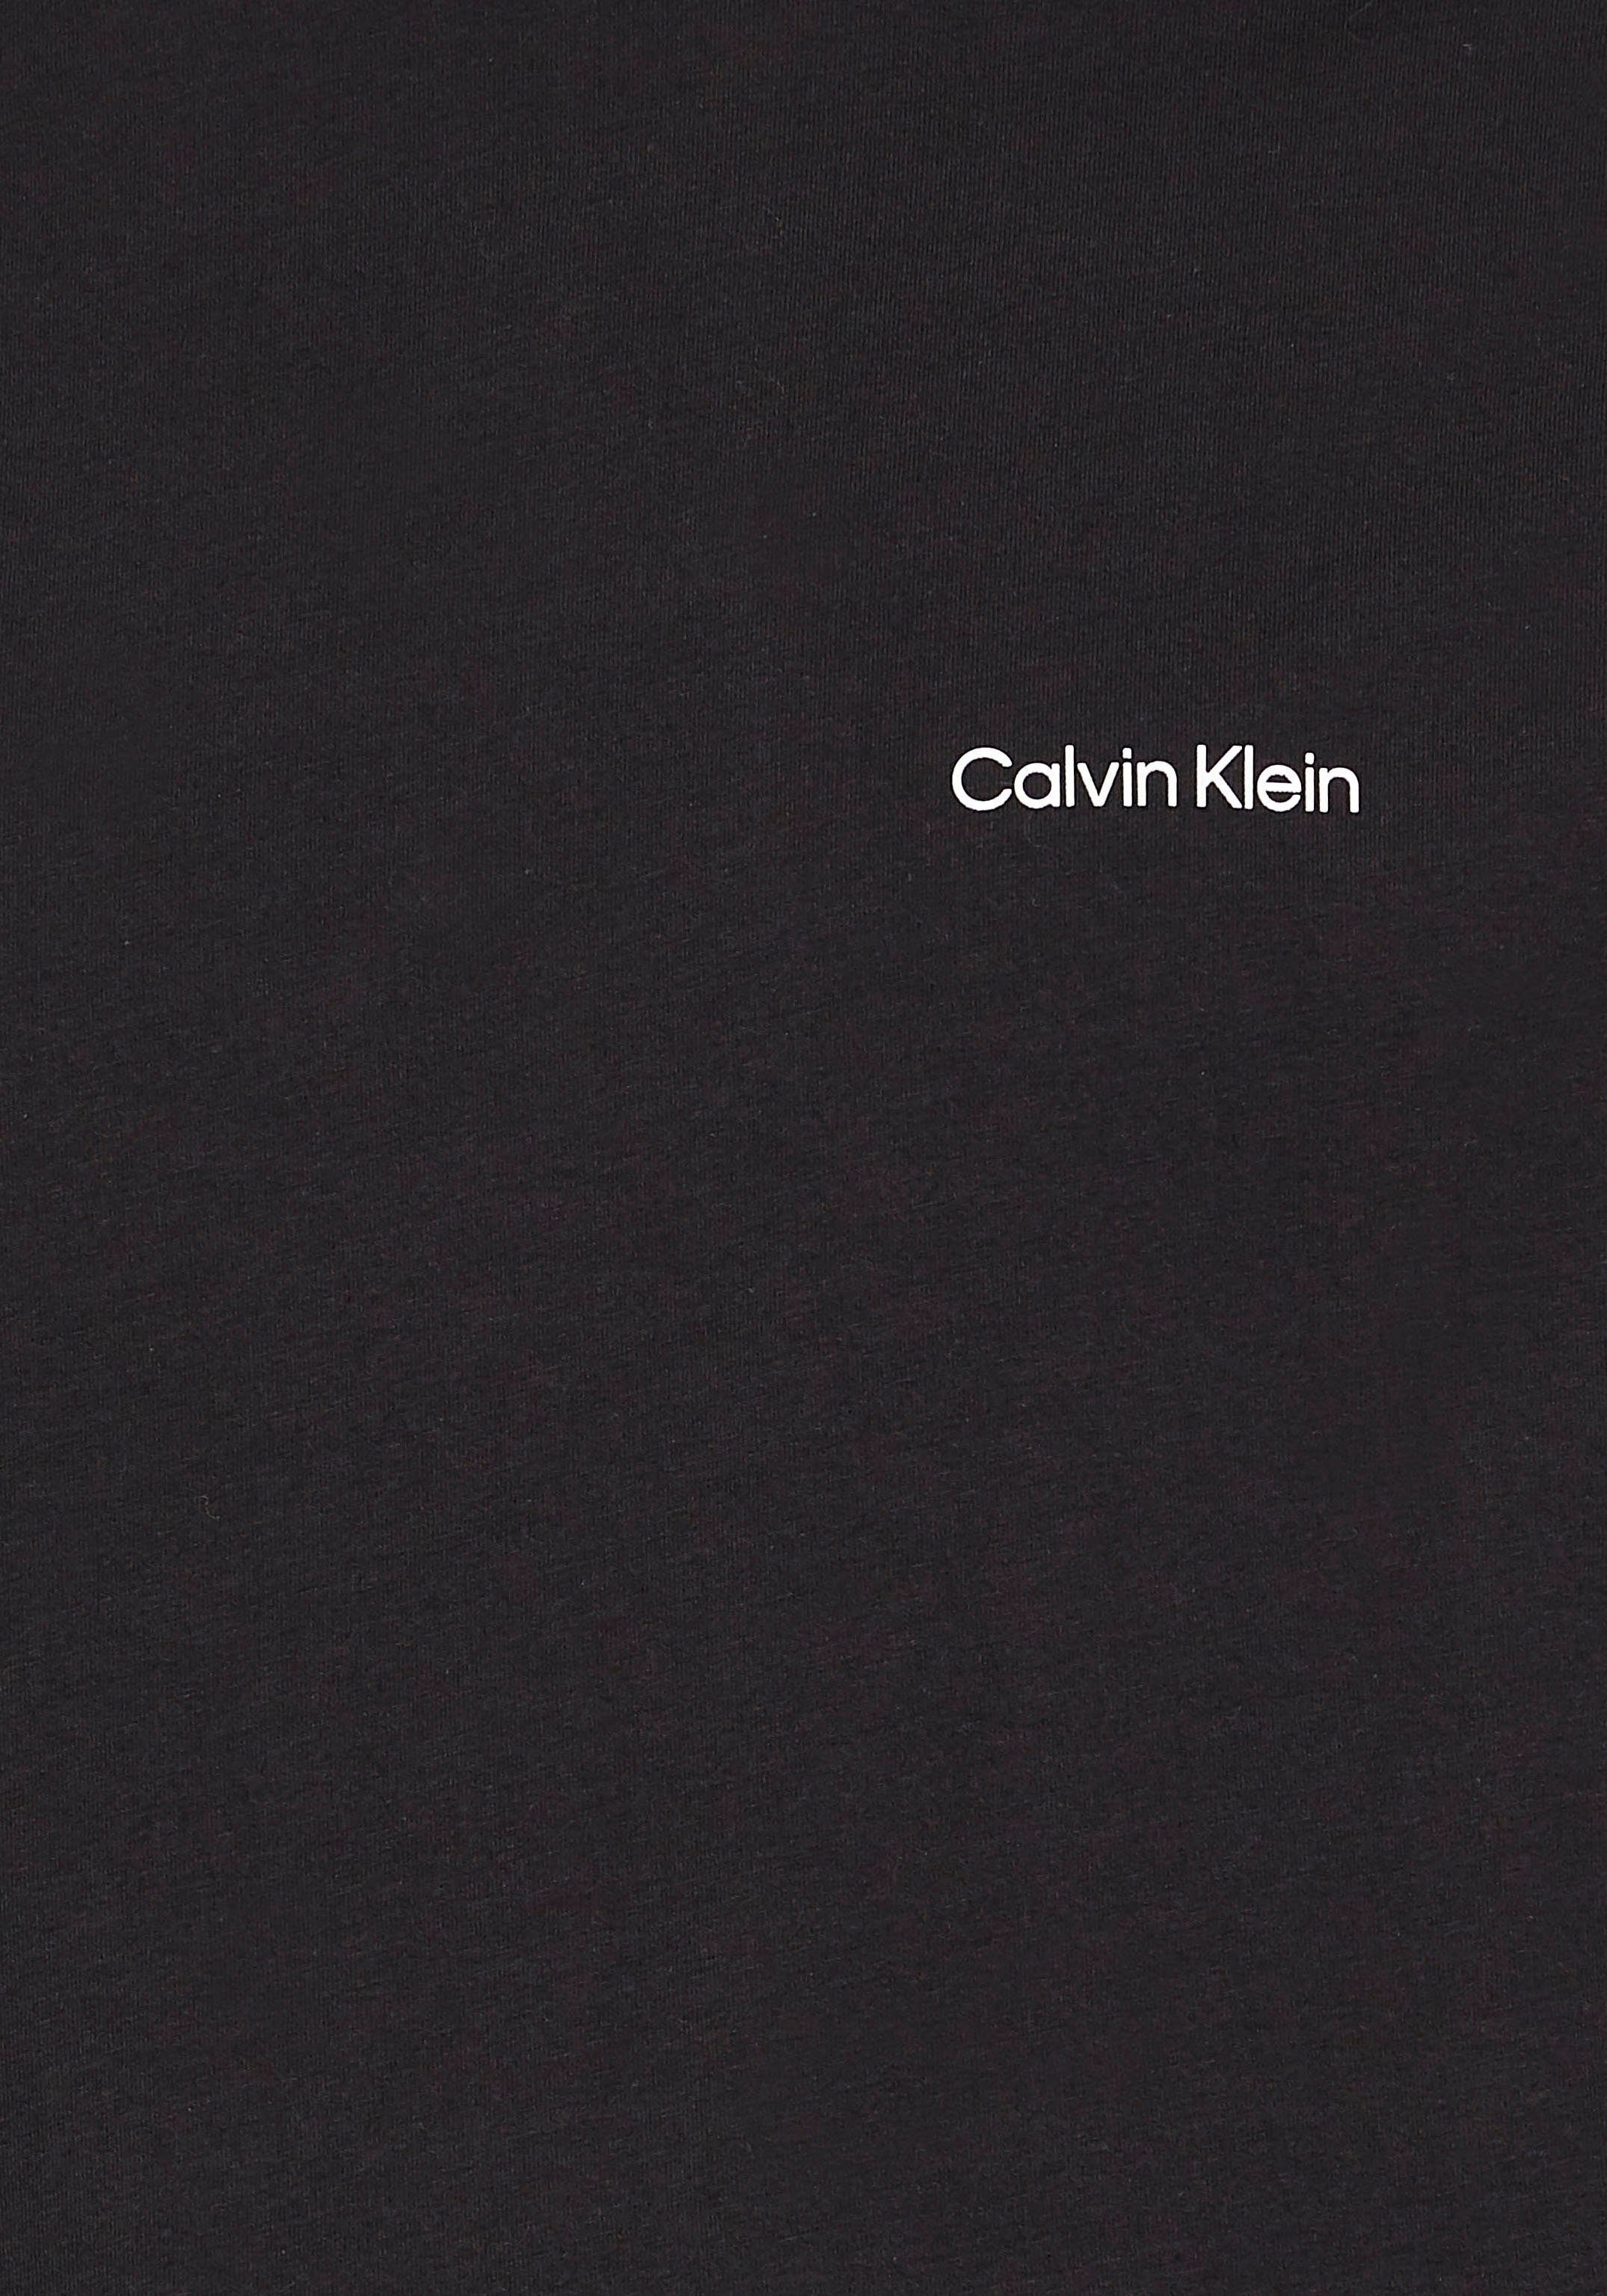 Mock-Kragen NECK Langarmshirt LOGO MICRO T-SHIRT Klein Calvin ck LS black mit MOCK